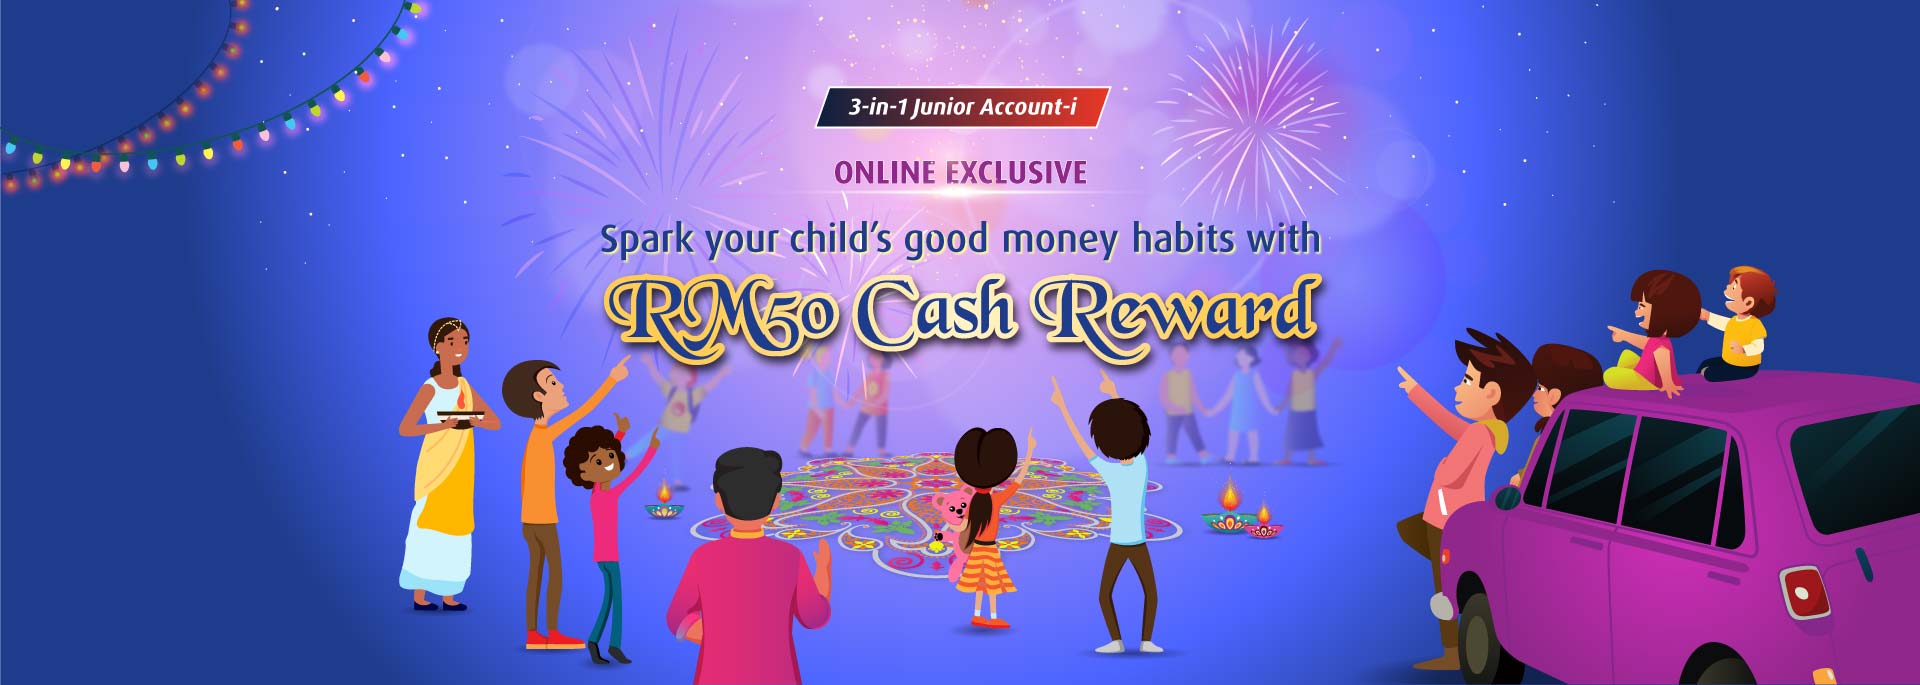 Spark your child's good money habits with RM50 Cash Reward